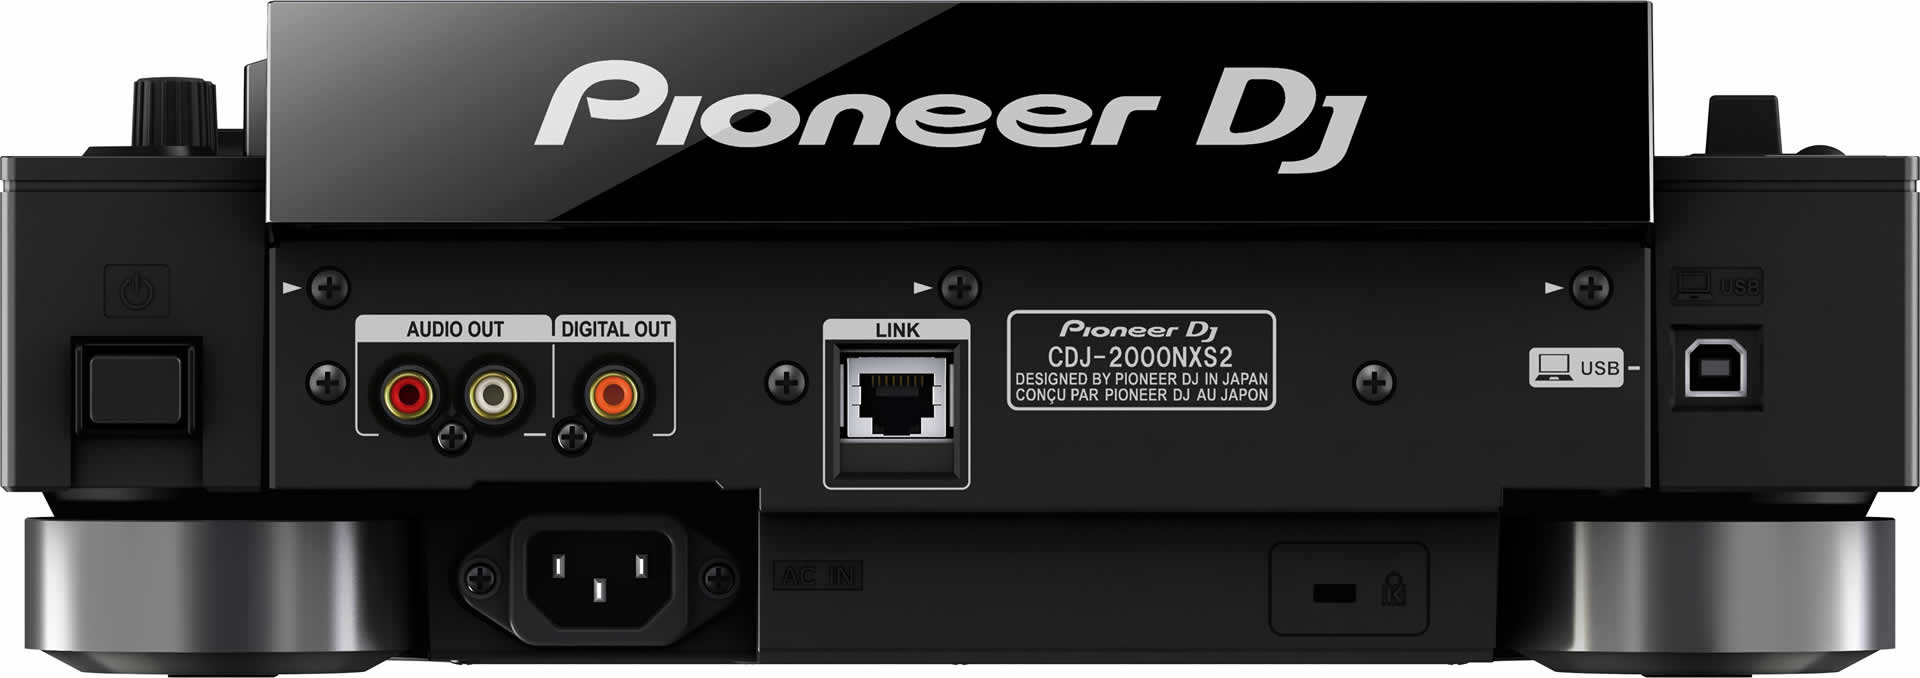 pioneer_cdj-2000nxs2_03.jpg